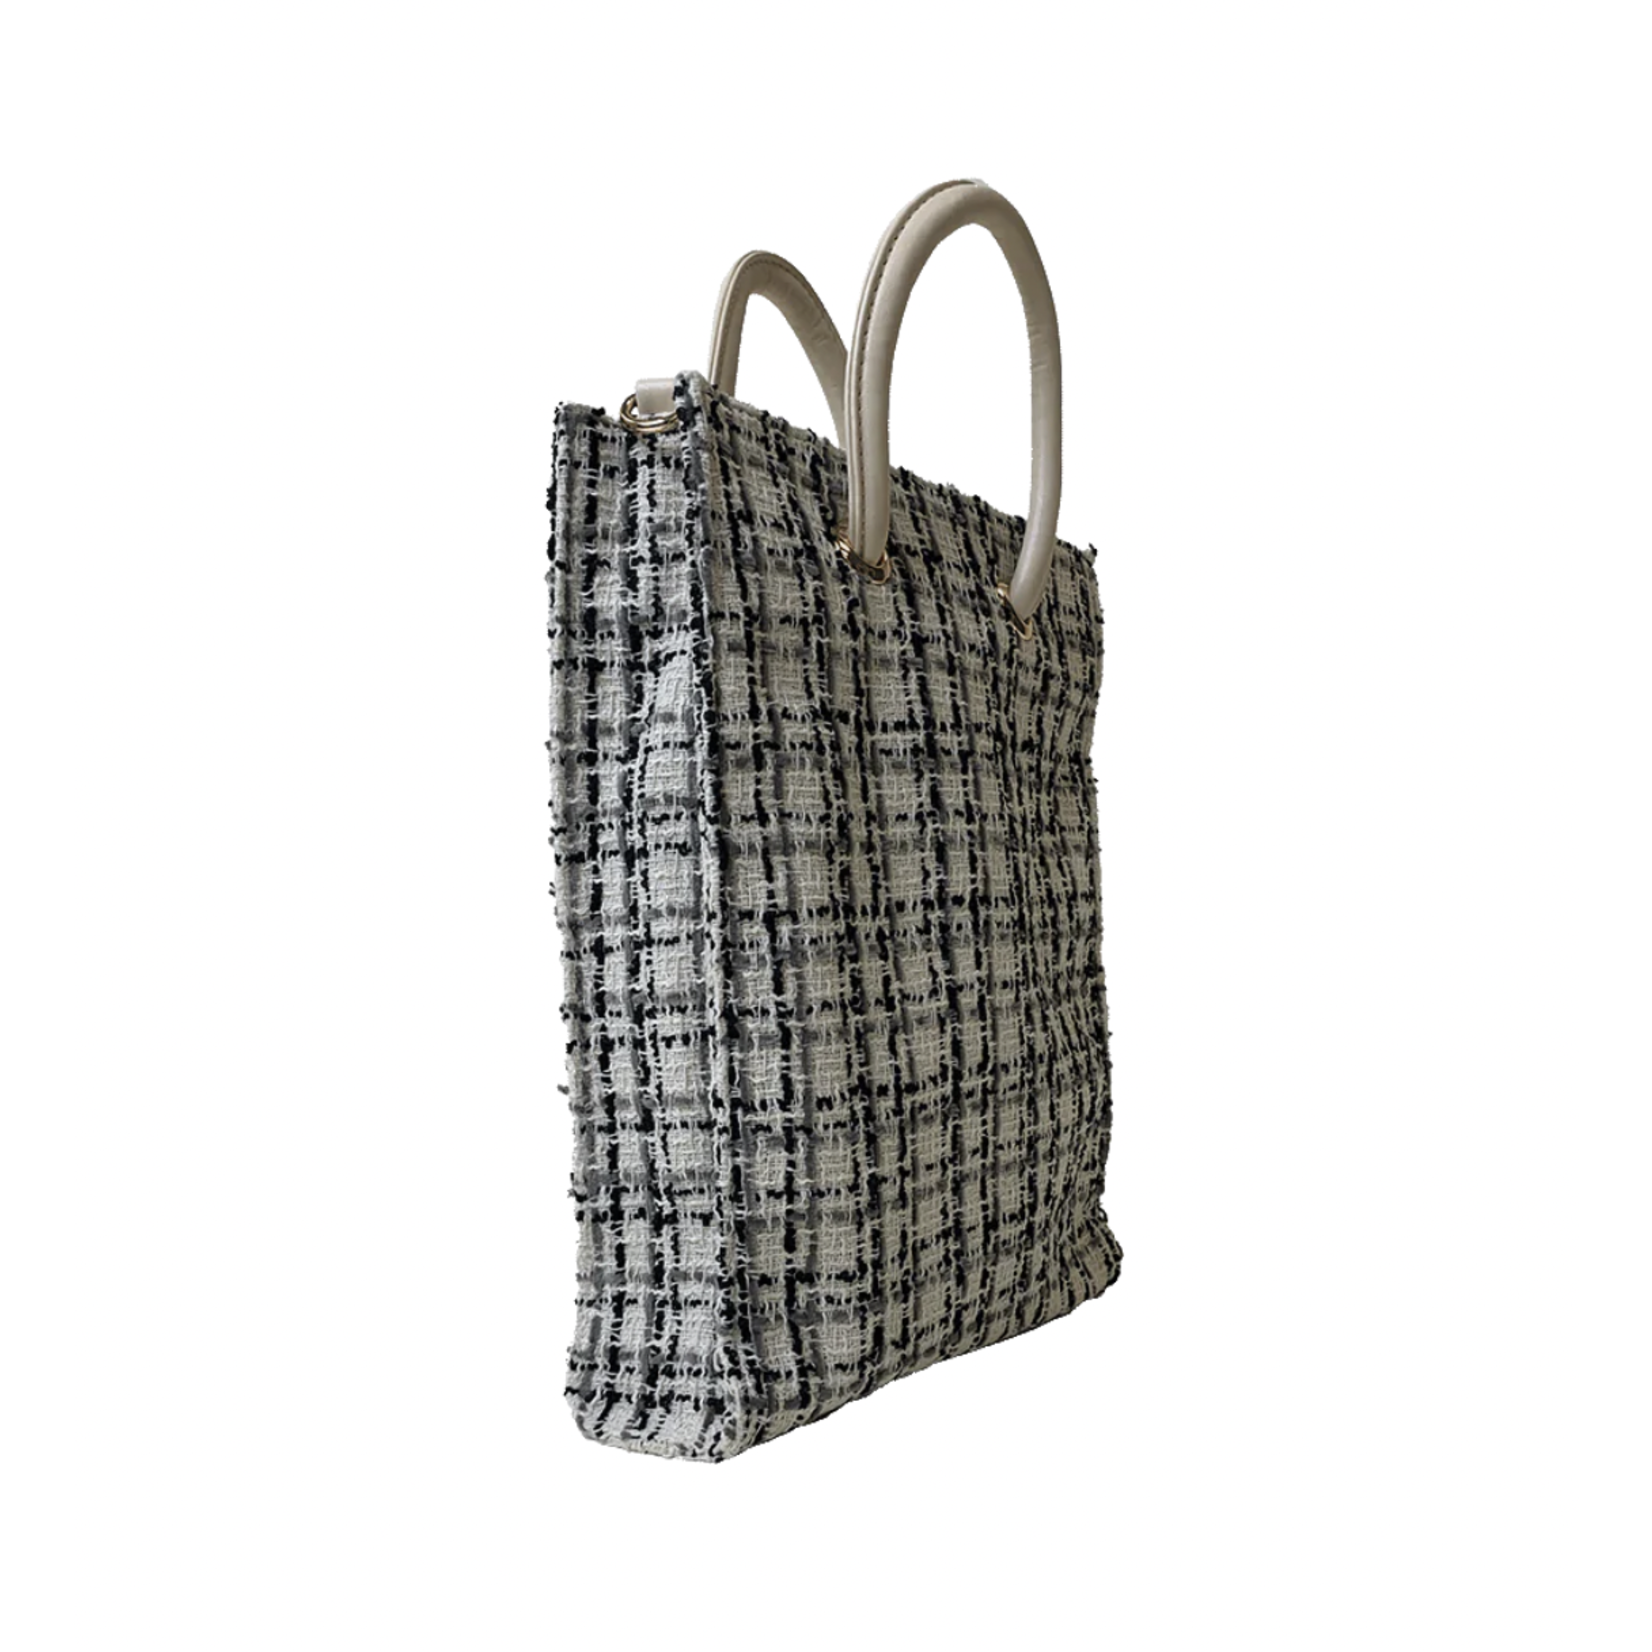 Ahdorned Aubrey Tweed Shopper Bag W/Strap